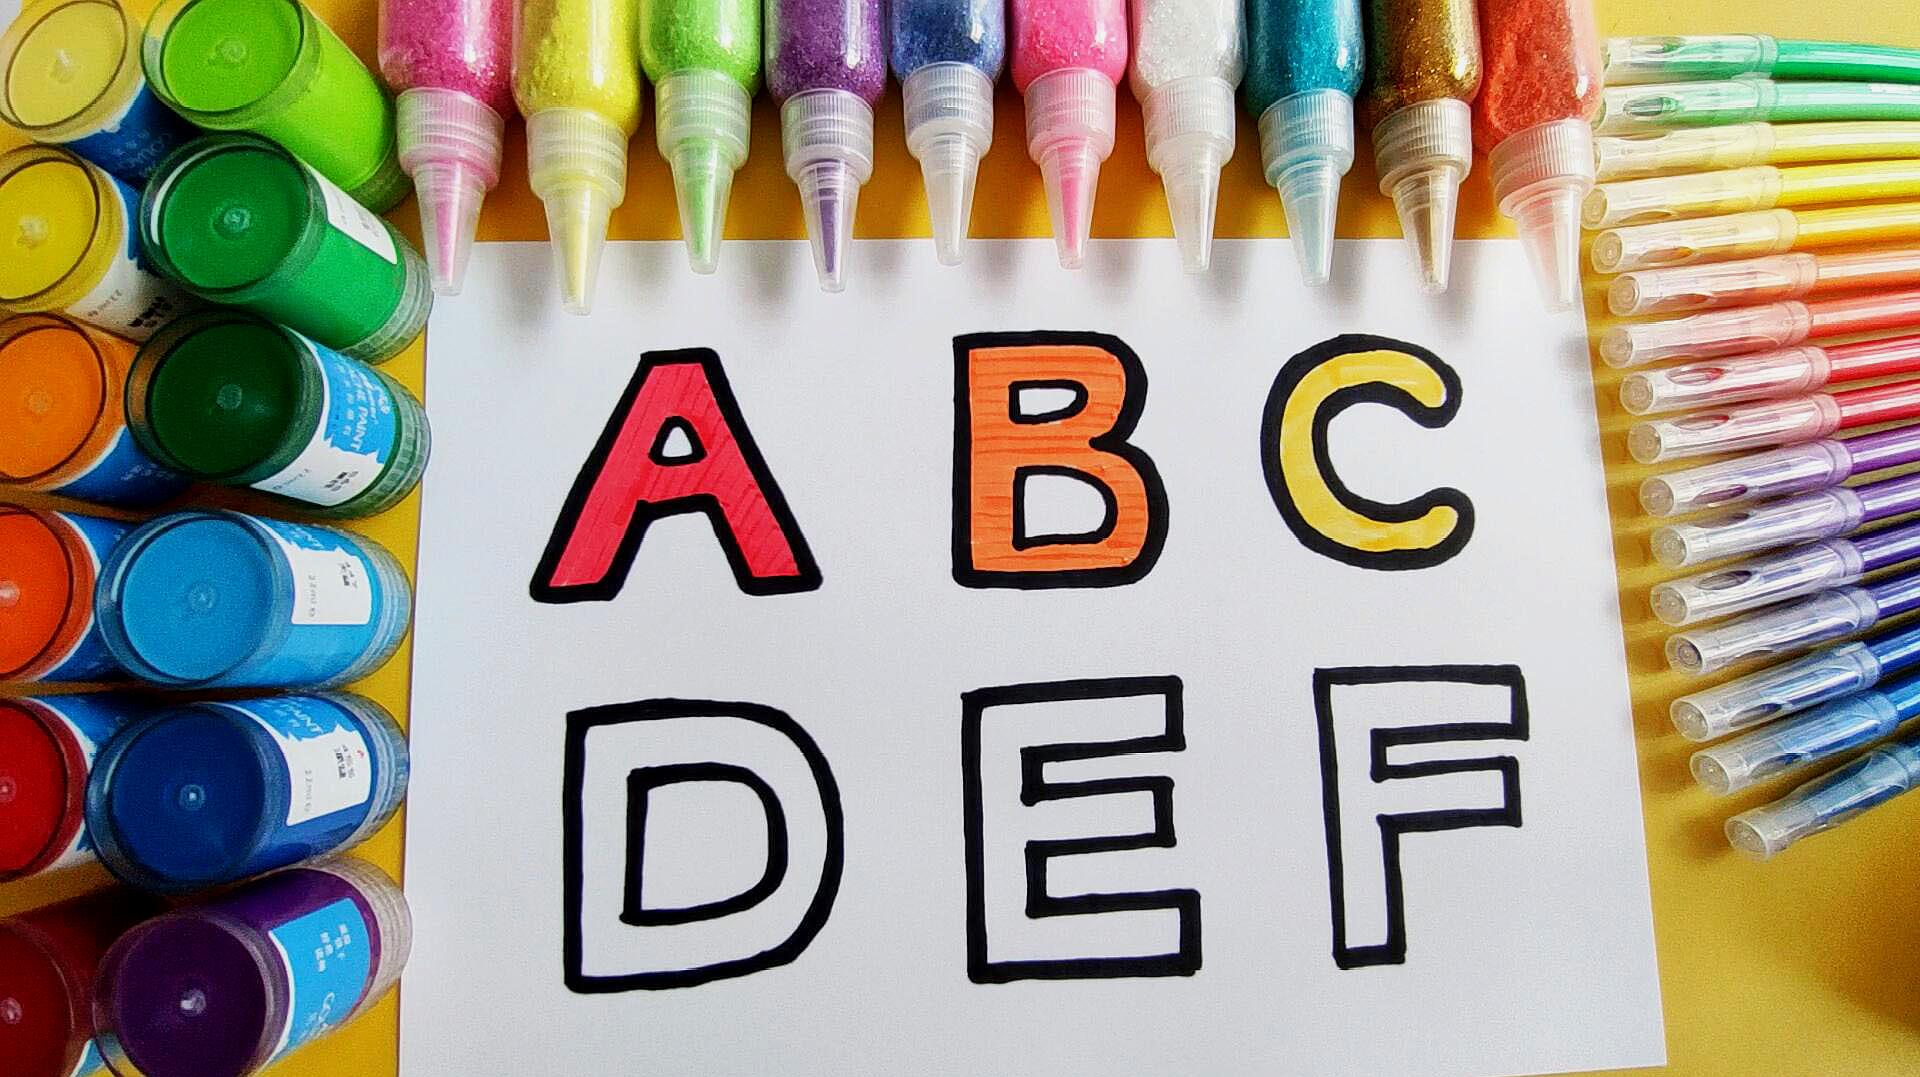 儿童益智早教简笔画,画英文字母并涂色,宝宝学习英语认识颜色